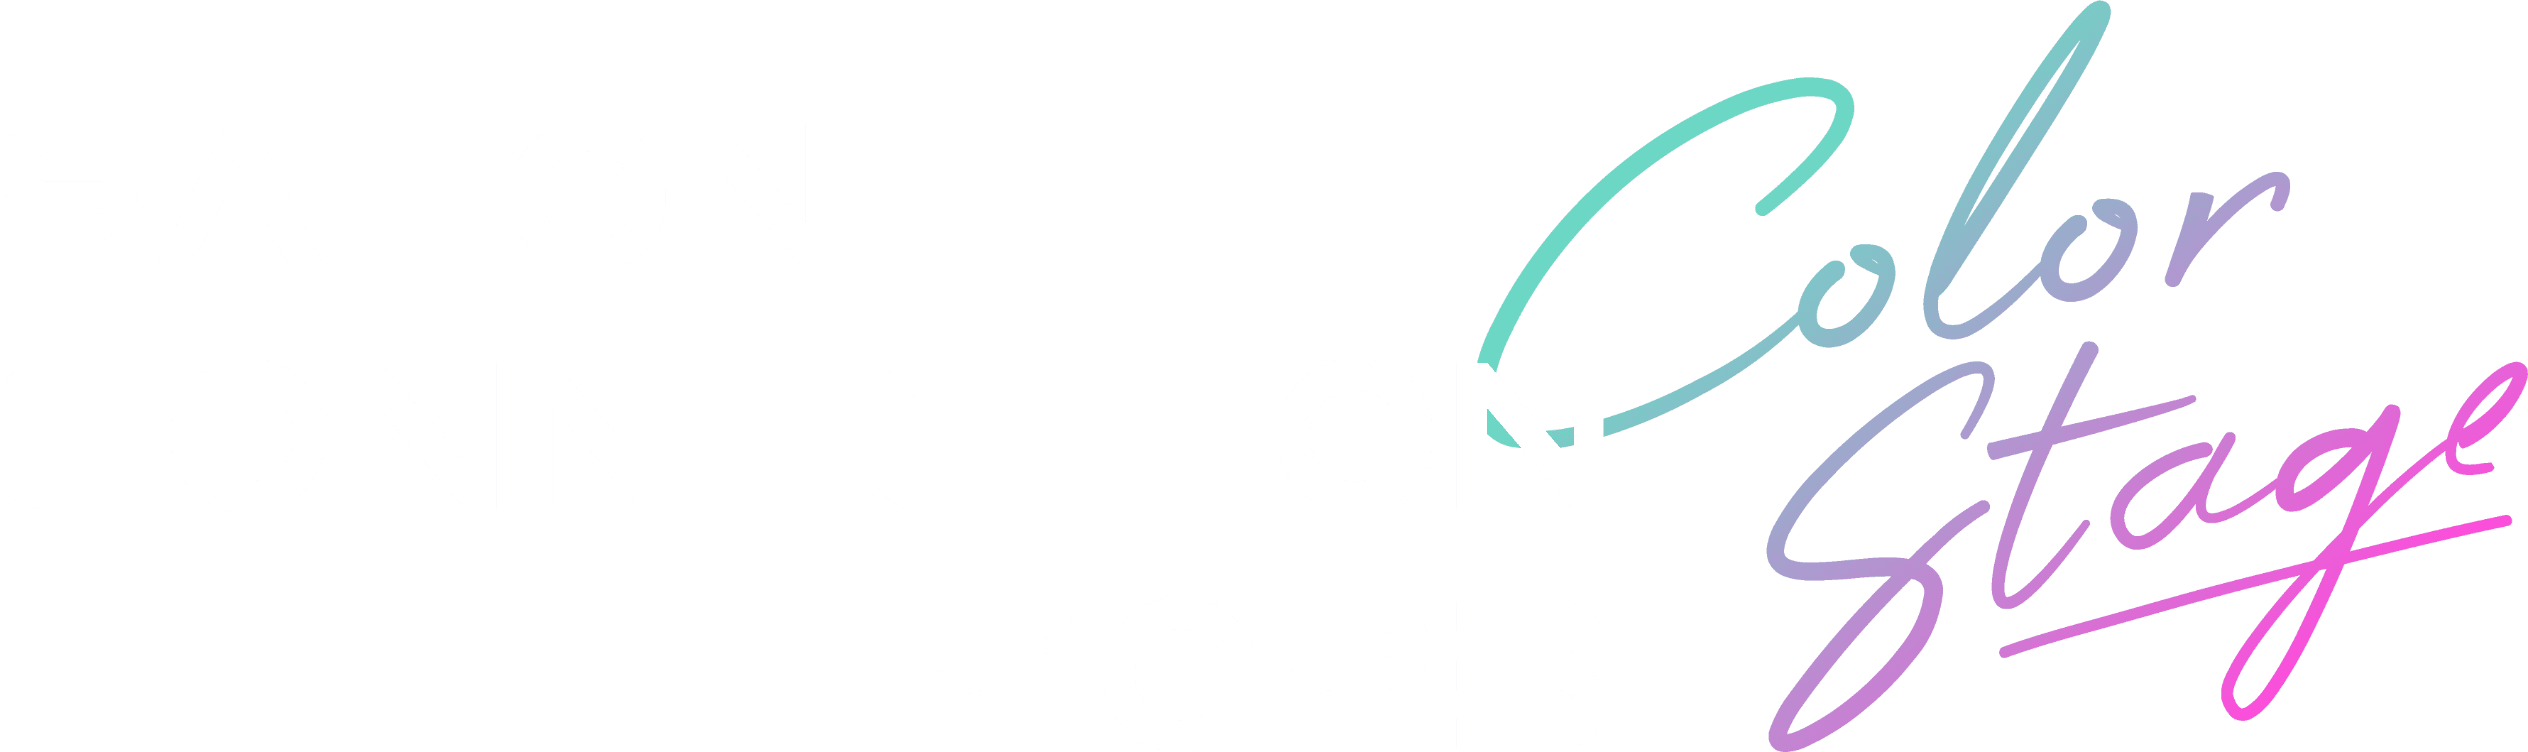 SALON CONNECTION 2023